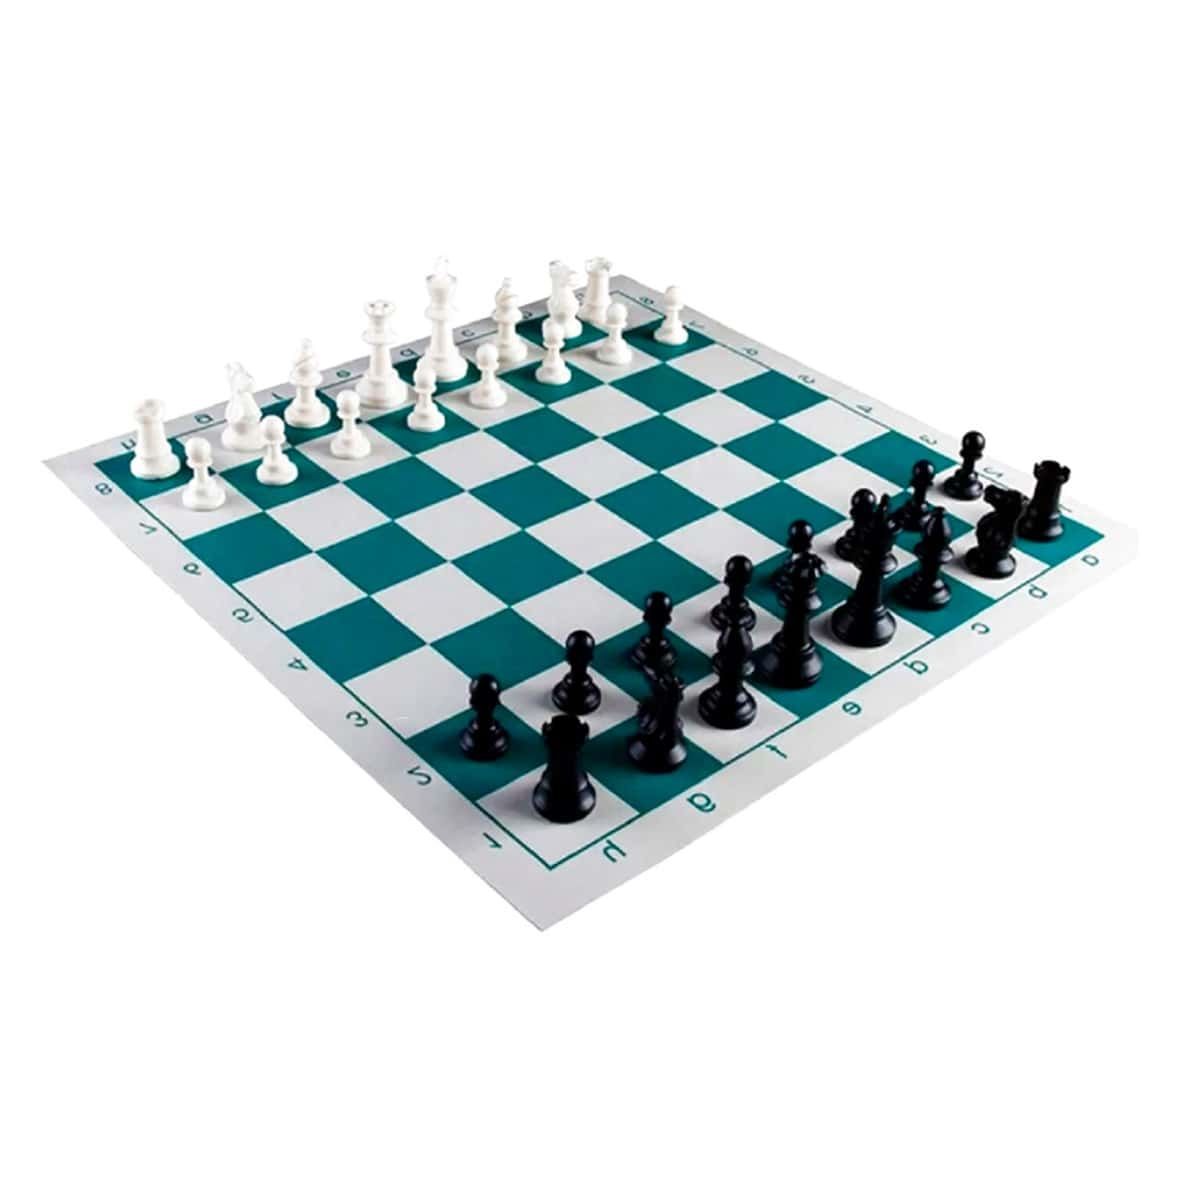 Mini jogo de tabuleiro jogo de tabuleiro jogo de xadrez conjunto